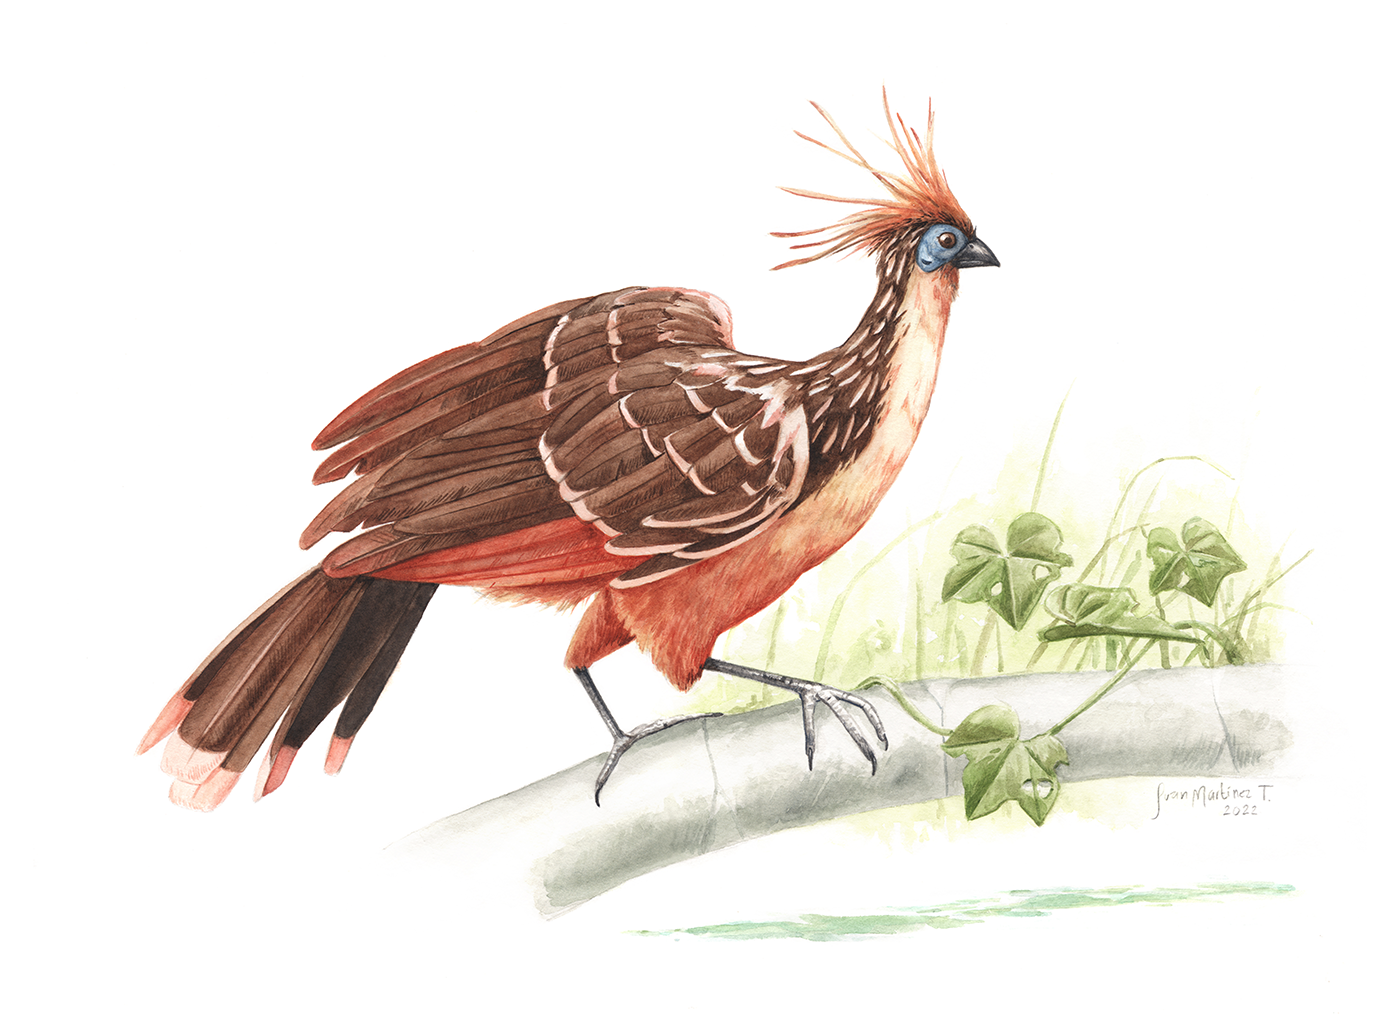 aves birds animals Nature scientific illustration Amazon ilustración científica watercolor acuarela ILLUSTRATION 